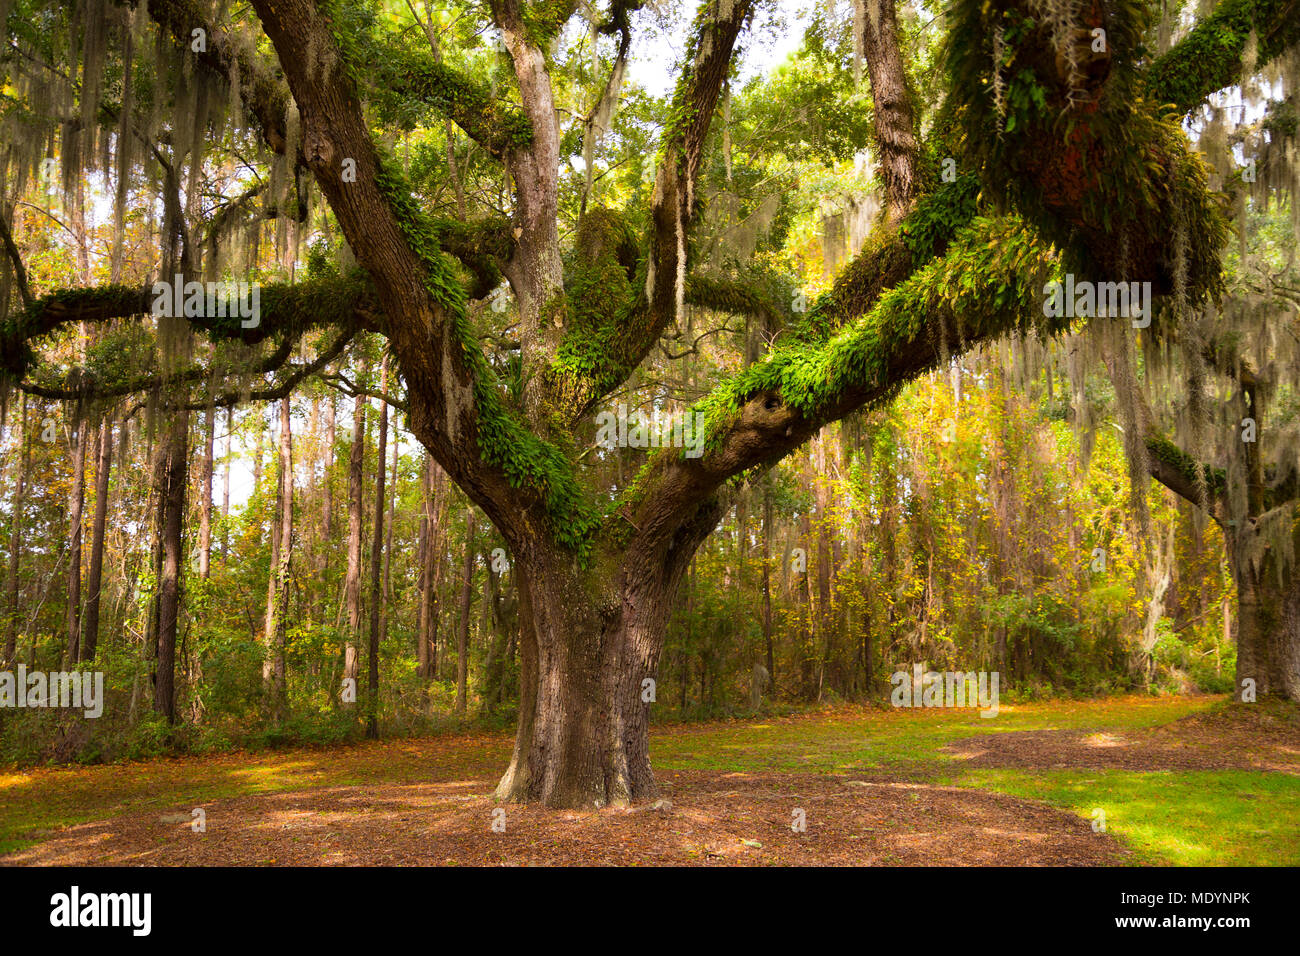 Oak tree with Spanish moss on a plantation near Charleston, South Carolina Stock Photo